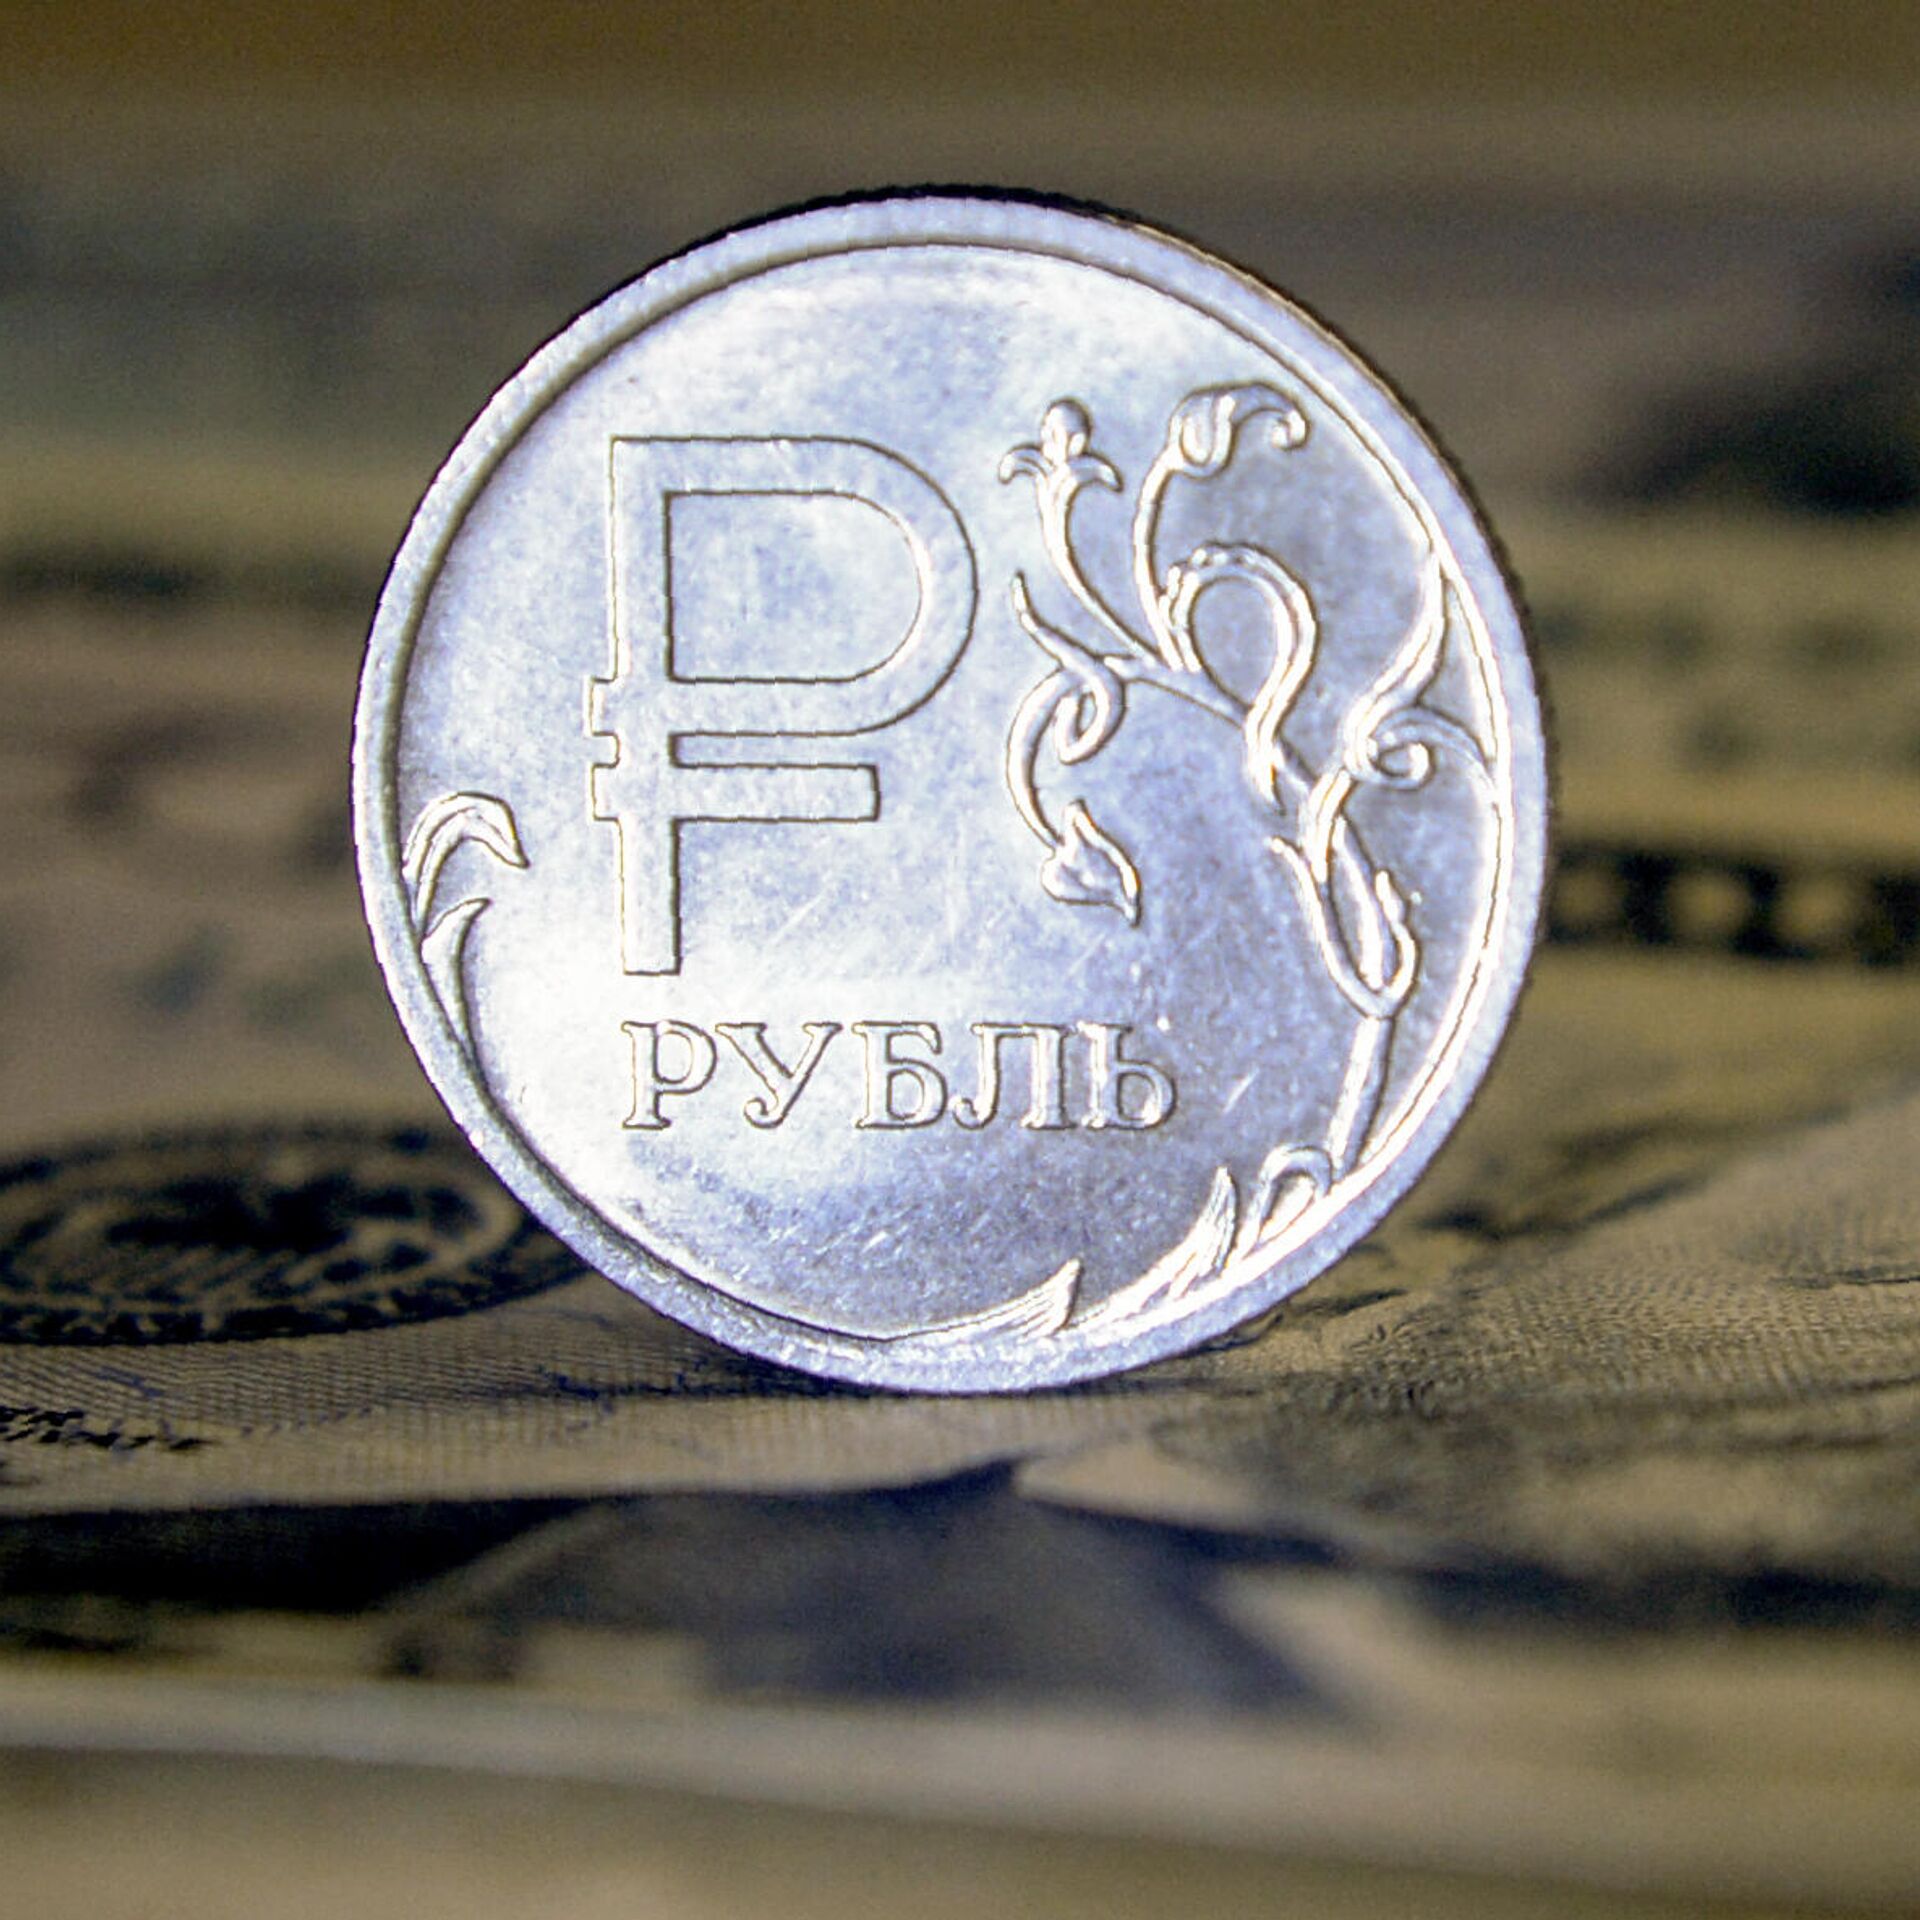 Рубль снижается